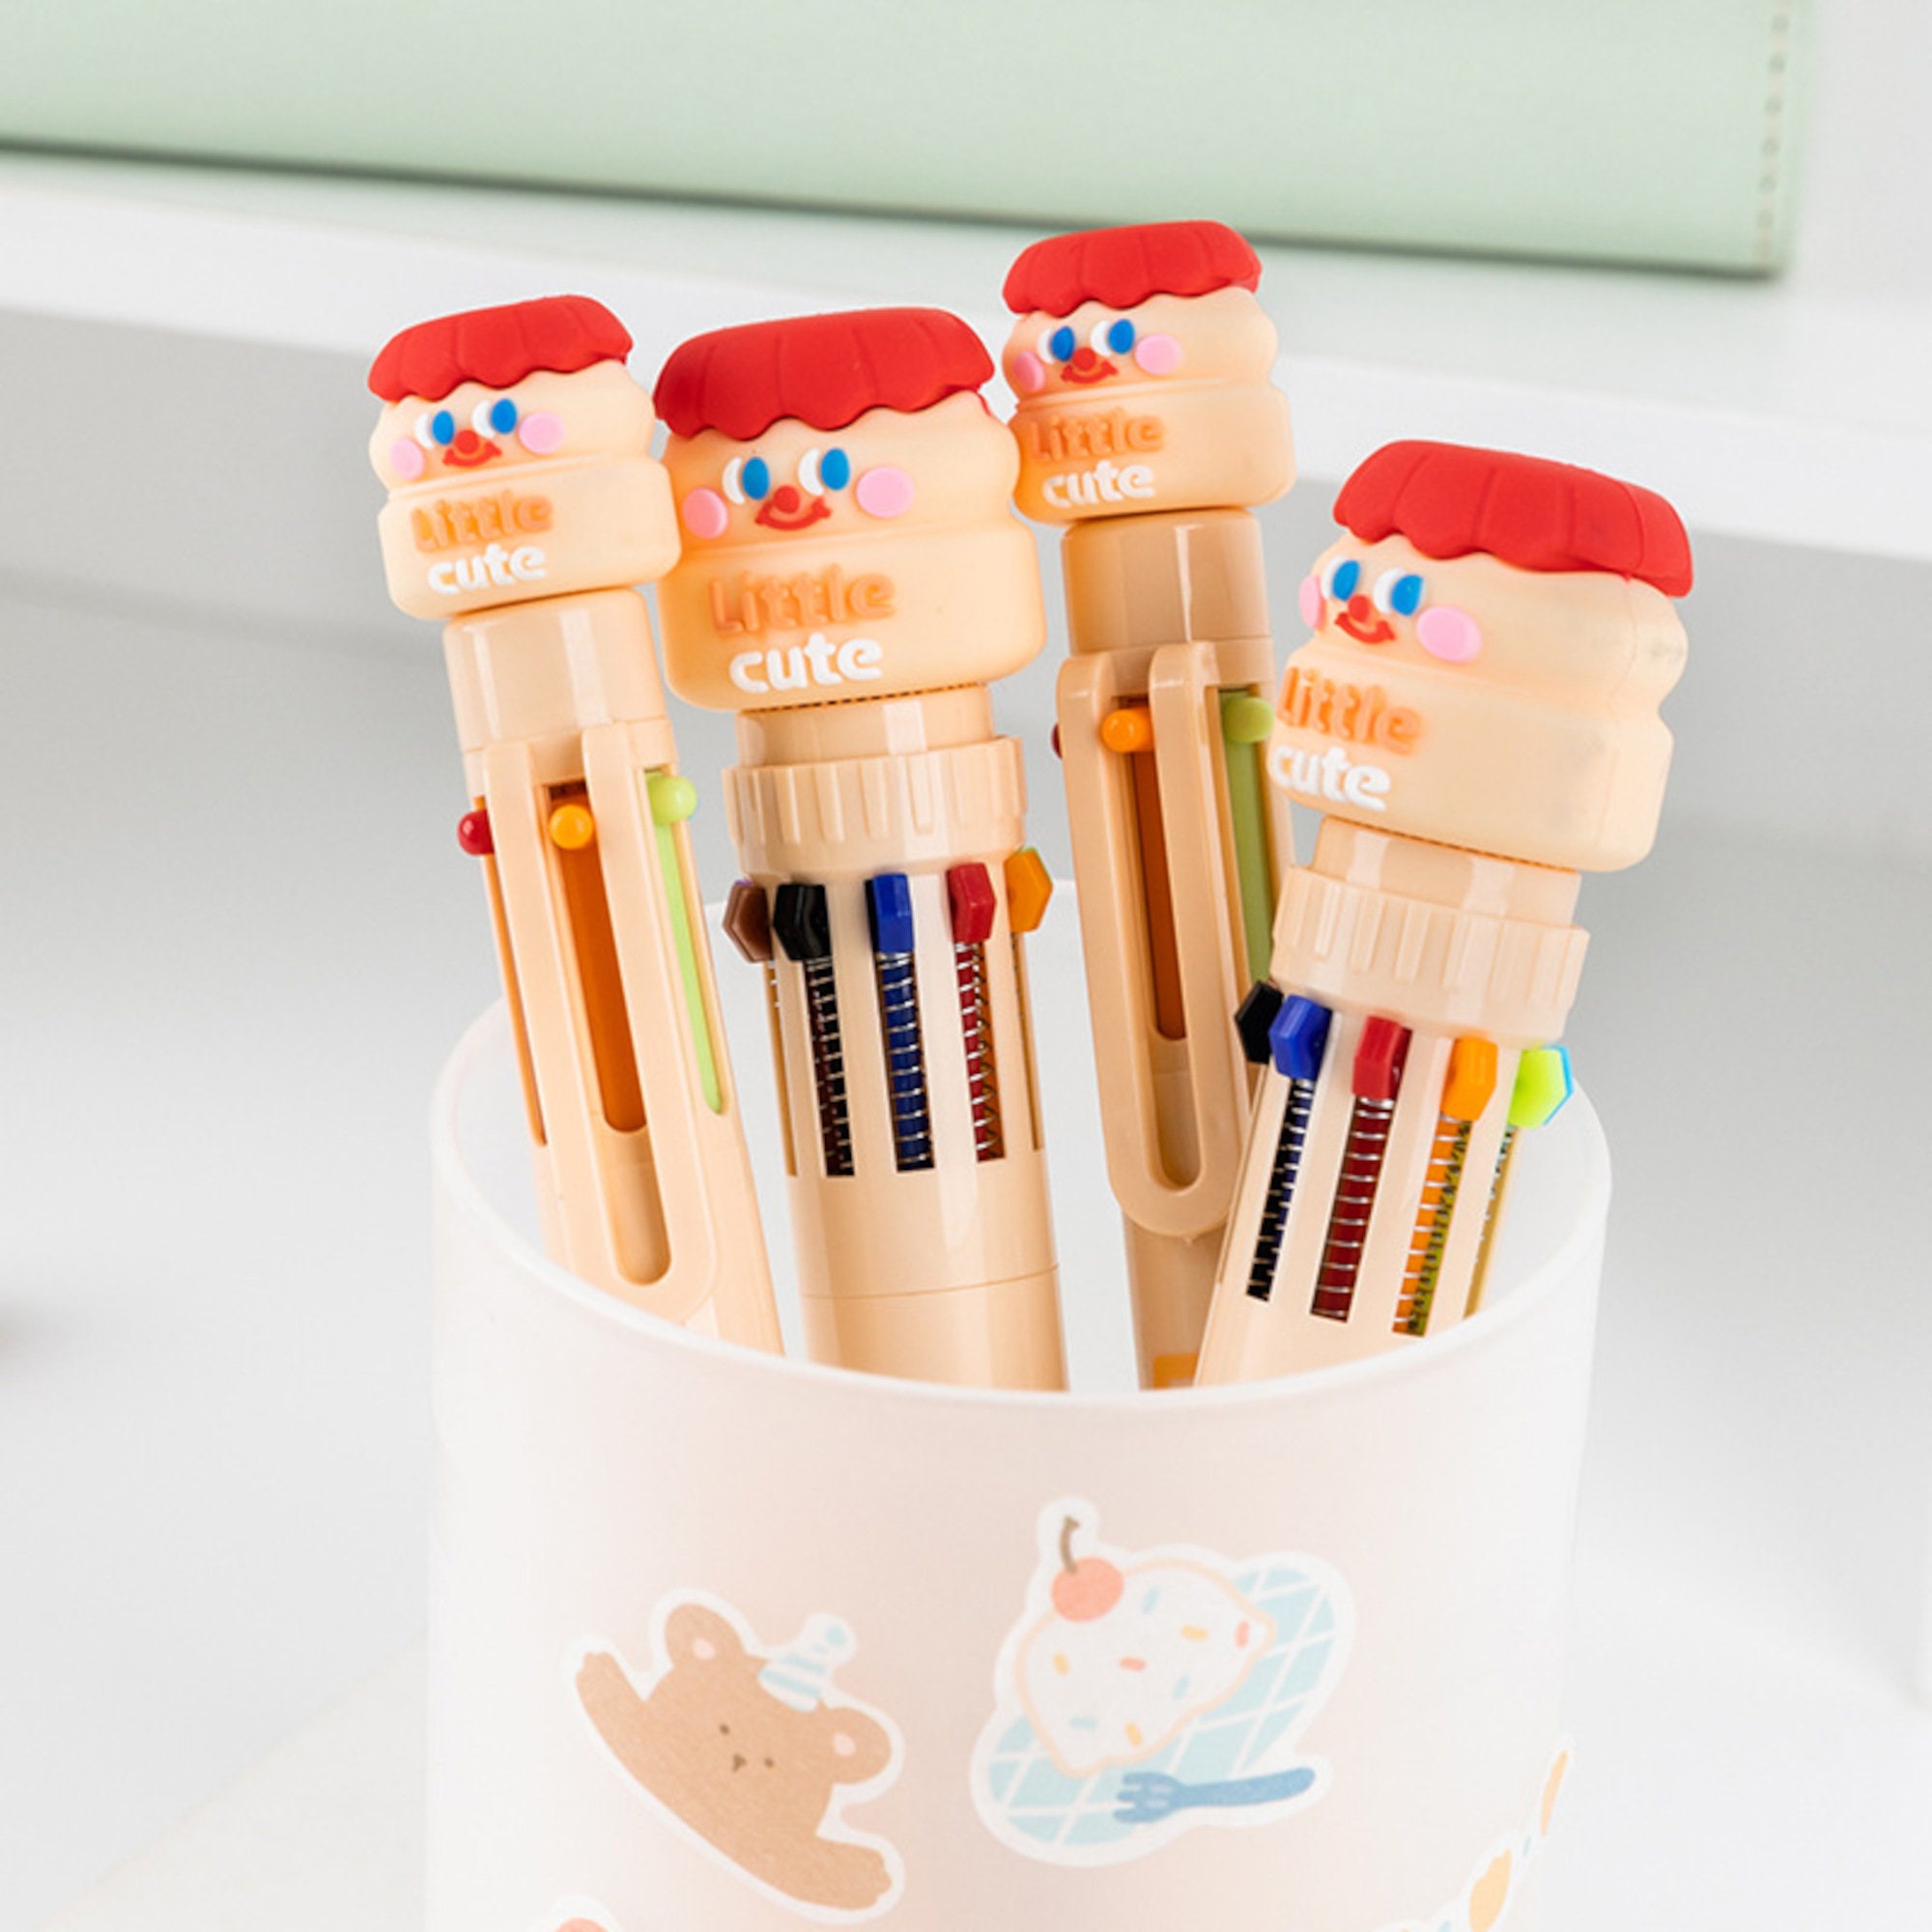 TOPUP Lot de 2 stylos à bille multicolores de dessin animé - Mini